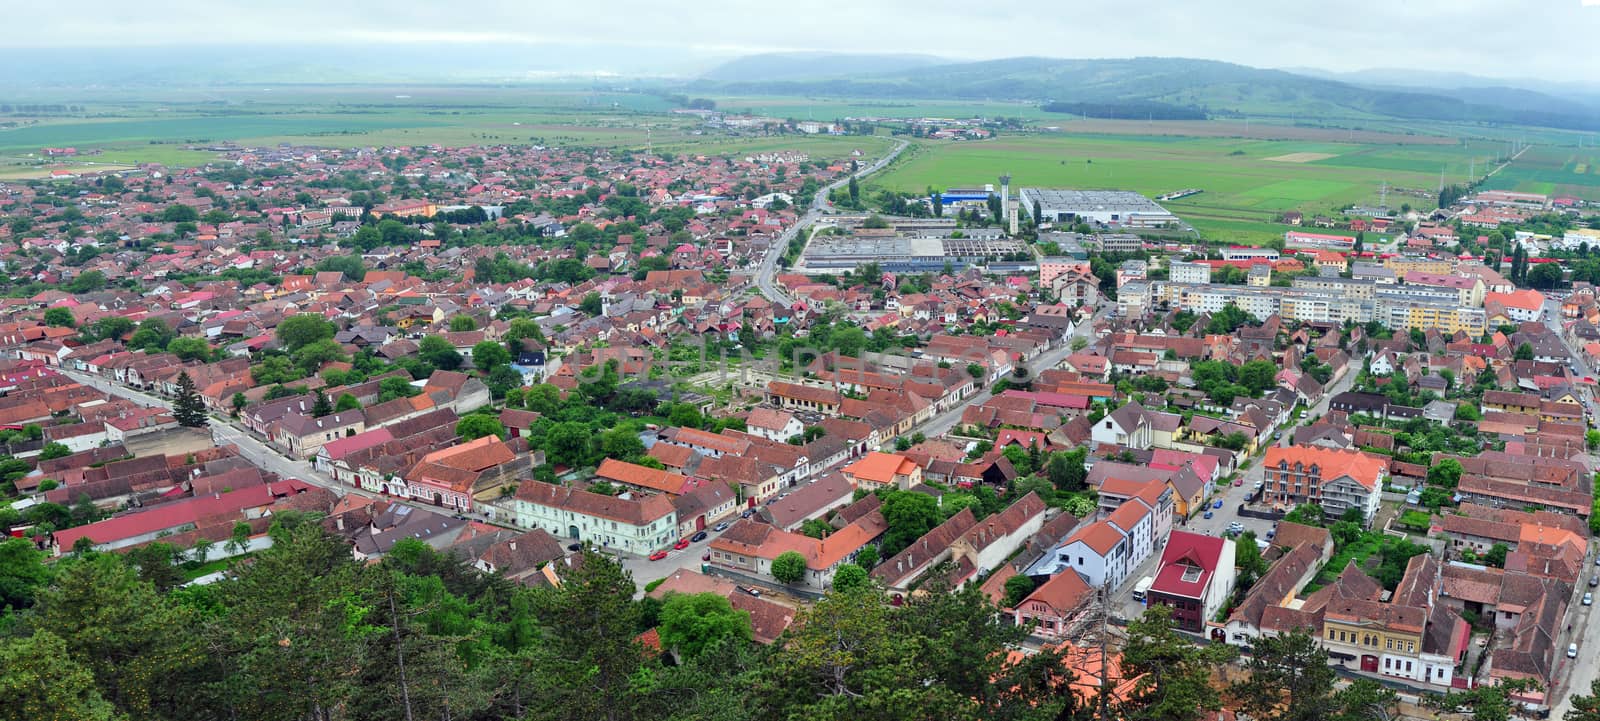 rasnov city romania country bird view panorama 